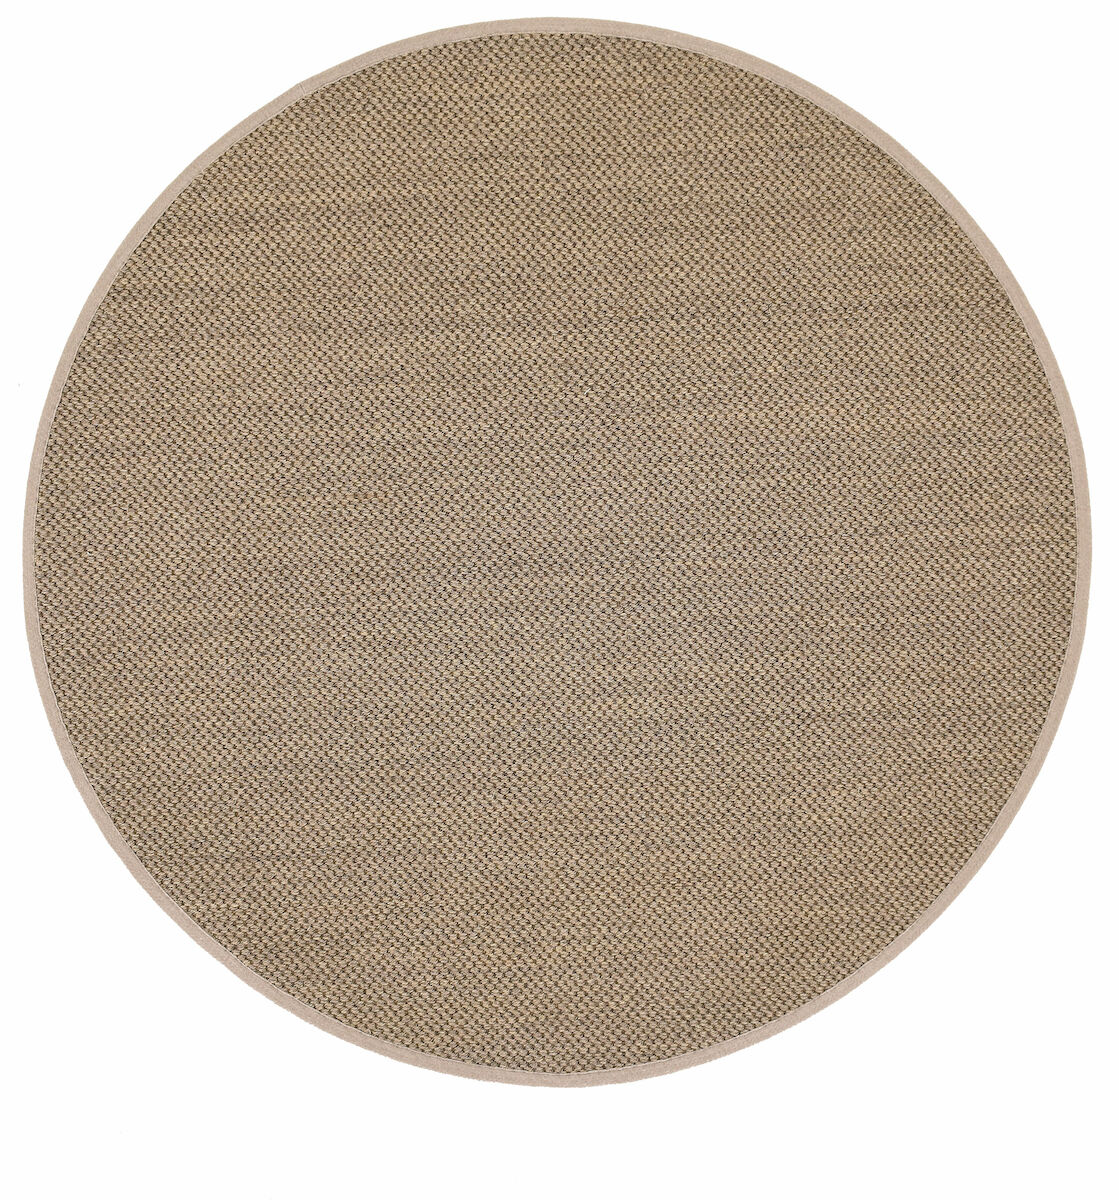 VM Carpet Panama sisalmatto 160 cm pyöreä luonnonväri